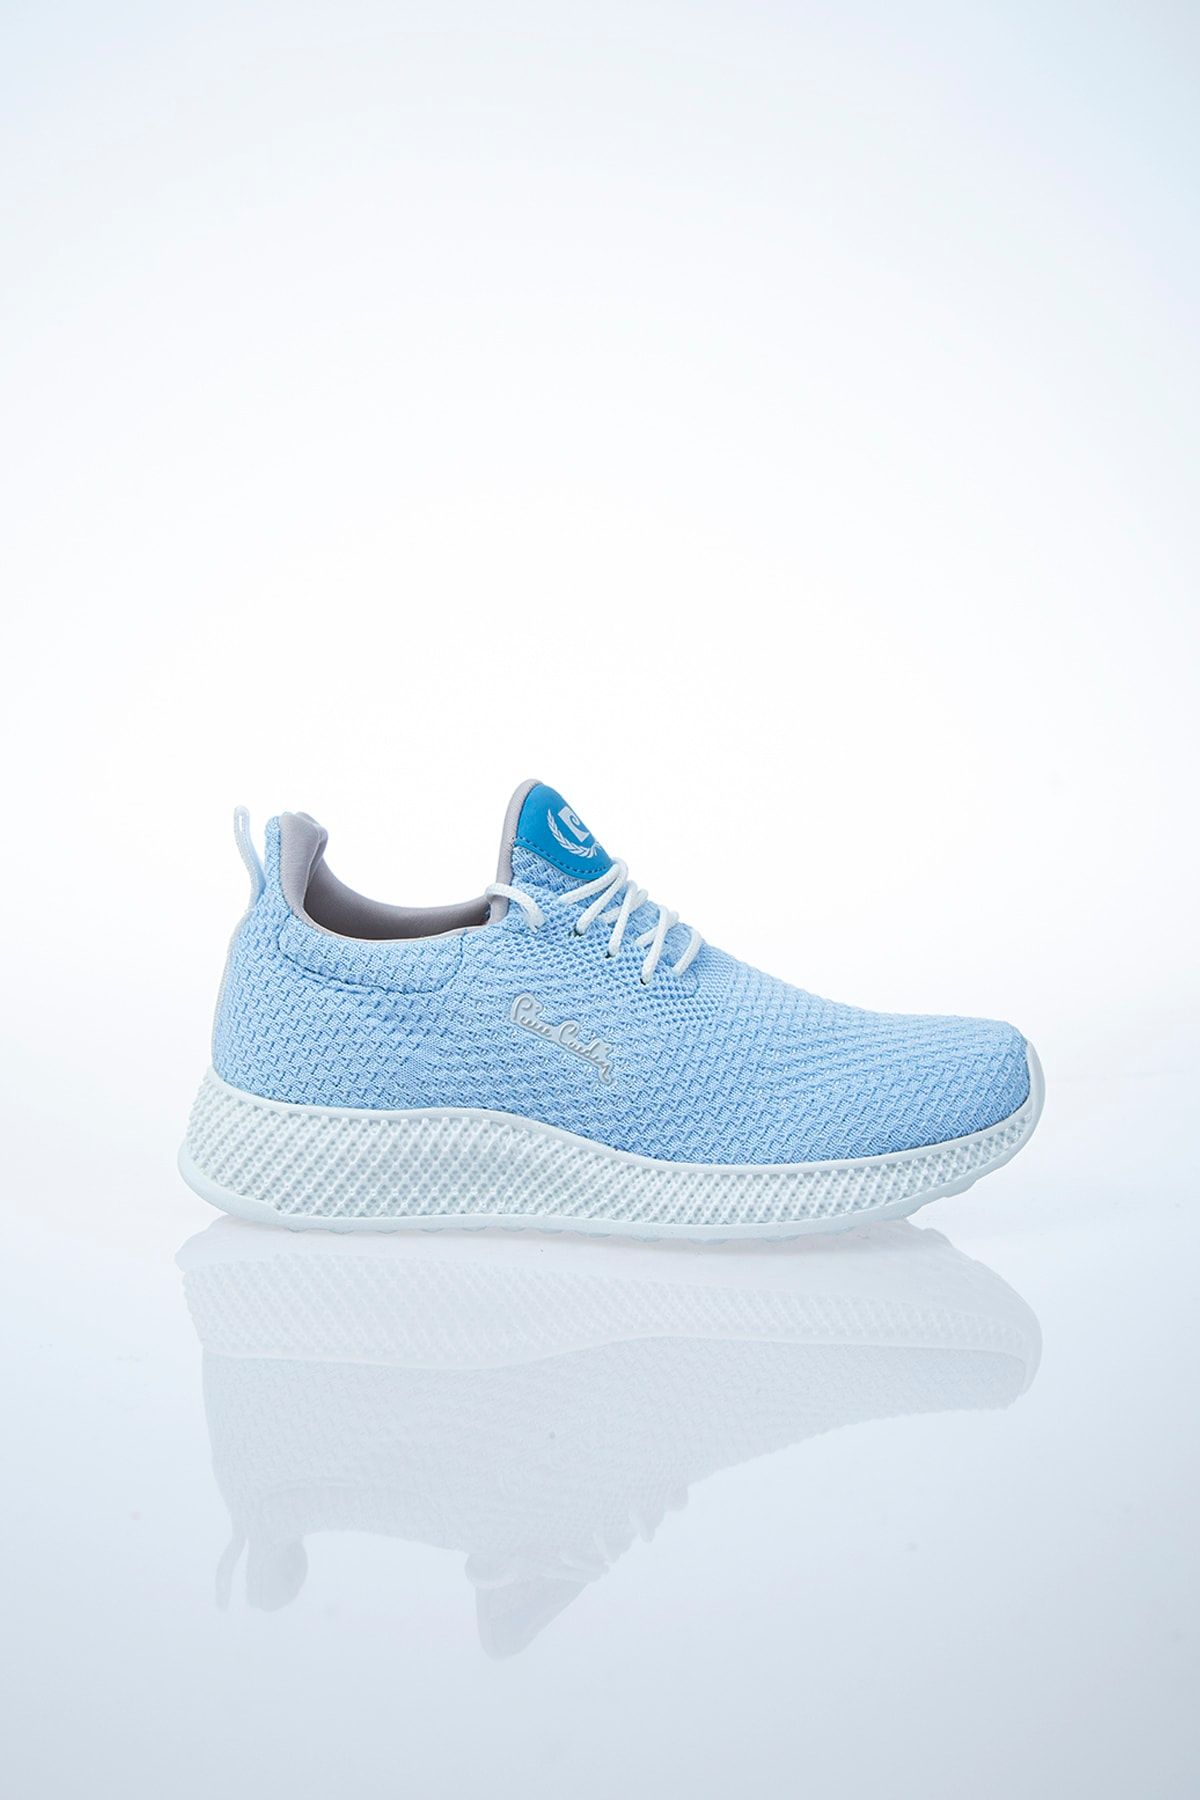 Pierre Cardin Kadın Günlük Spor Ayakkabı-Mavi PCS-10248